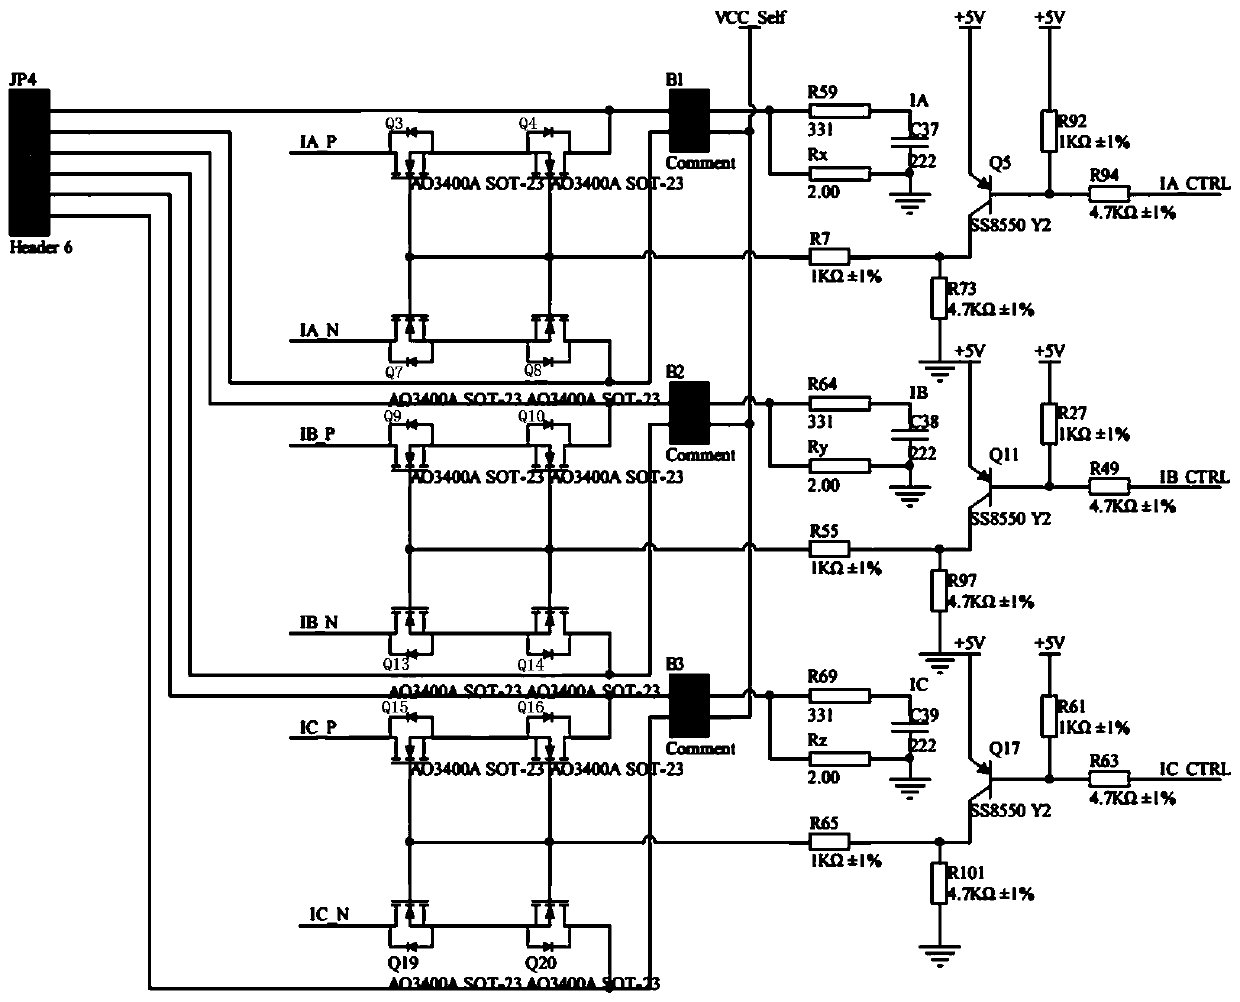 Metering-type intelligent circuit breaker based on internet of things